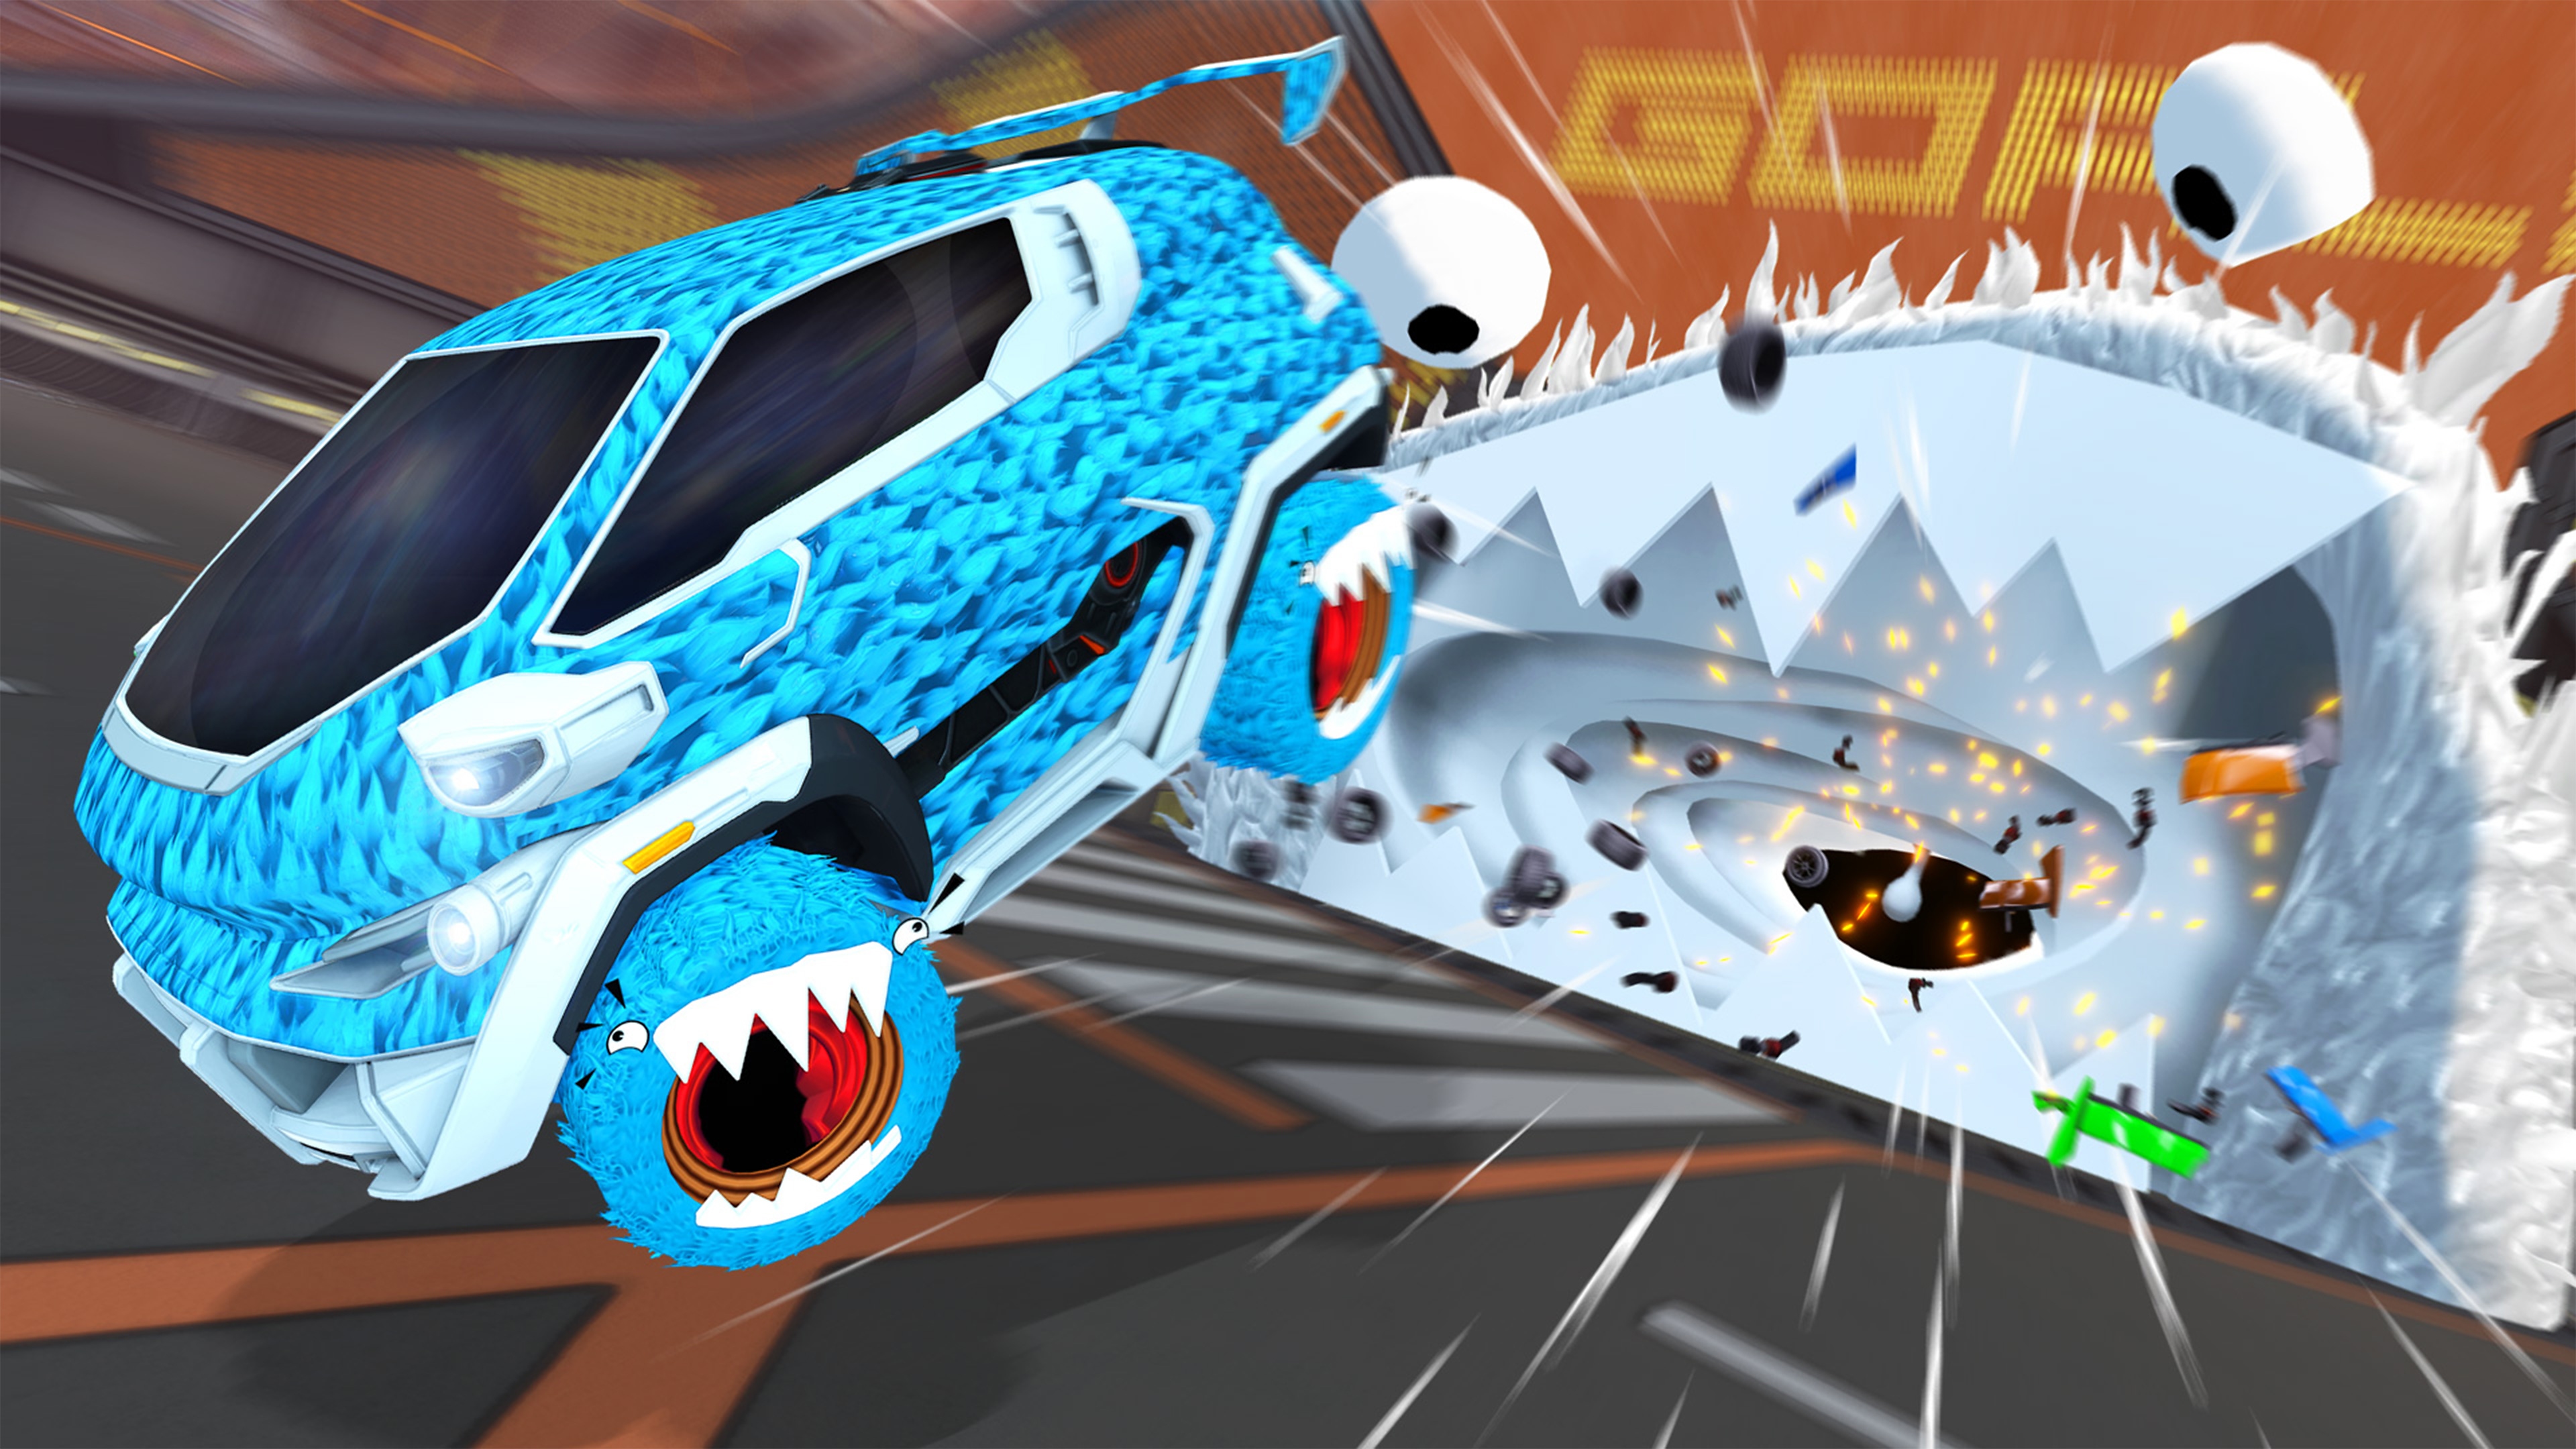 Capture d'écran de Rocket League montrant une voiture bleue recouverte d'une sorte de fourrure